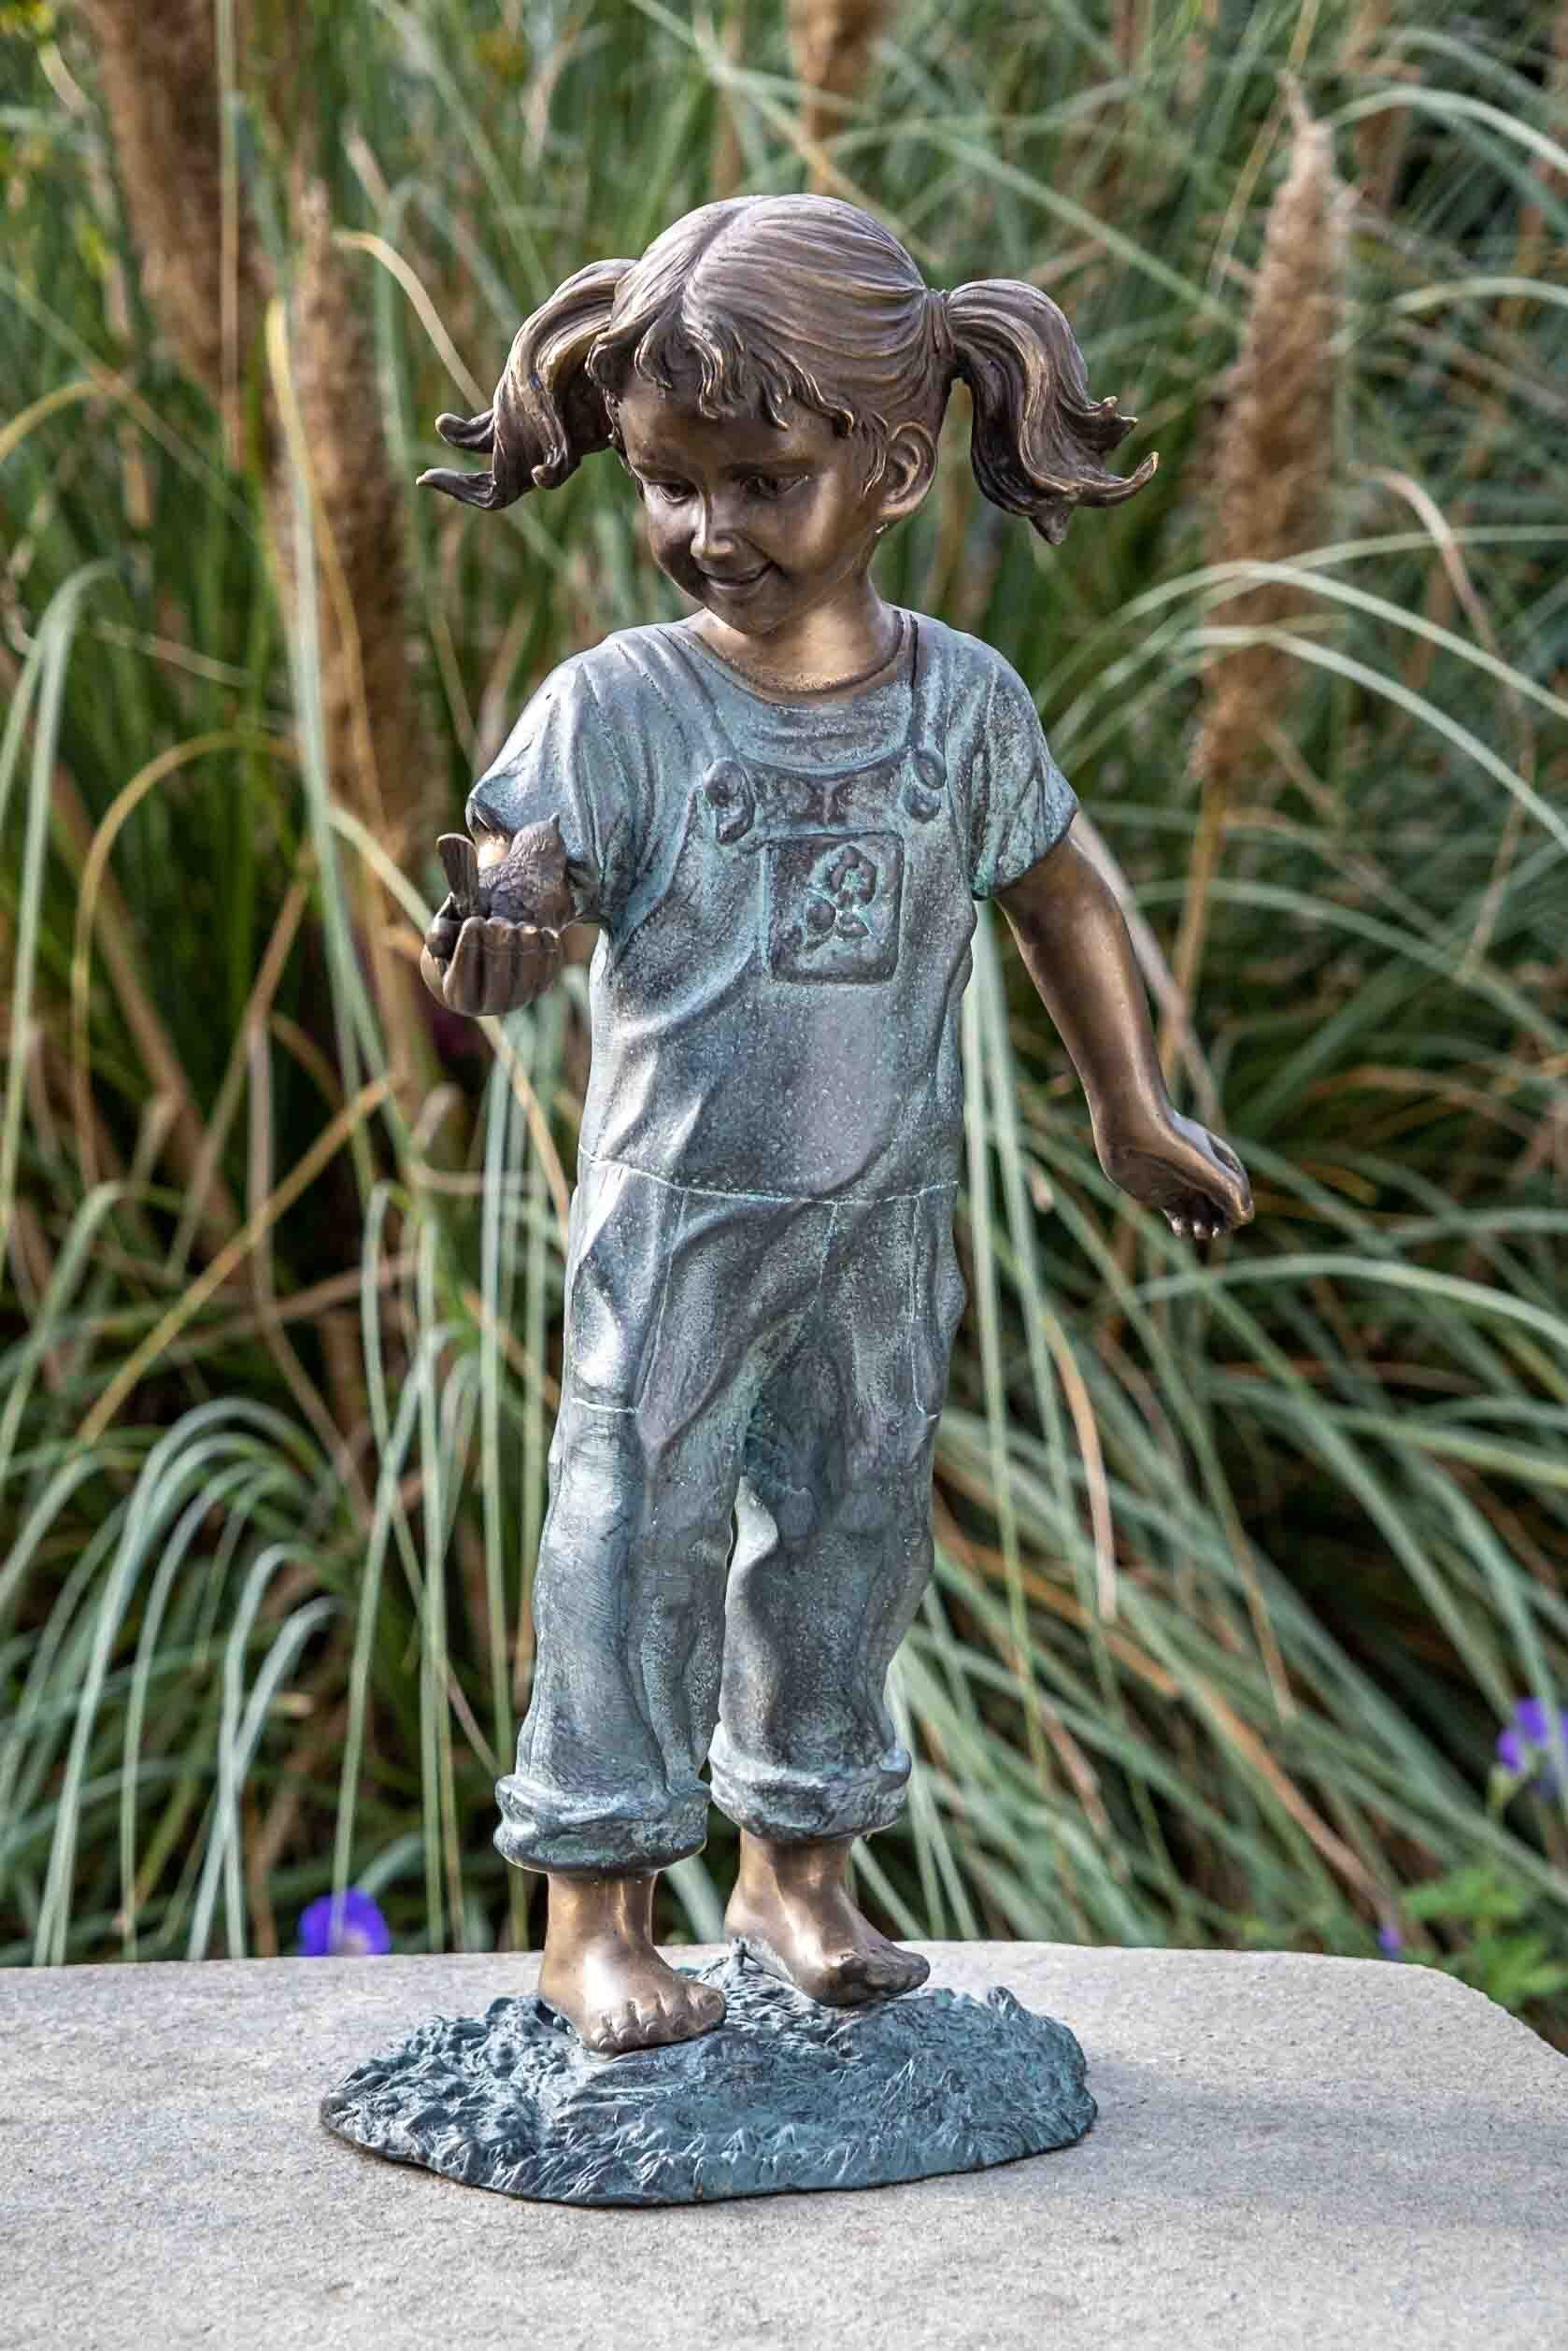 IDYL Gartenfigur IDYL Bronze-Skulptur Mädchen mit Vogel in der Hand, Bronze – sehr robust – Langlebig – witterungsbeständig gegen Frost, Regen und UV-Strahlung. Die Modelle werden in Wachsausschmelzverfahren in Bronze gegossen und von Hand patiniert.